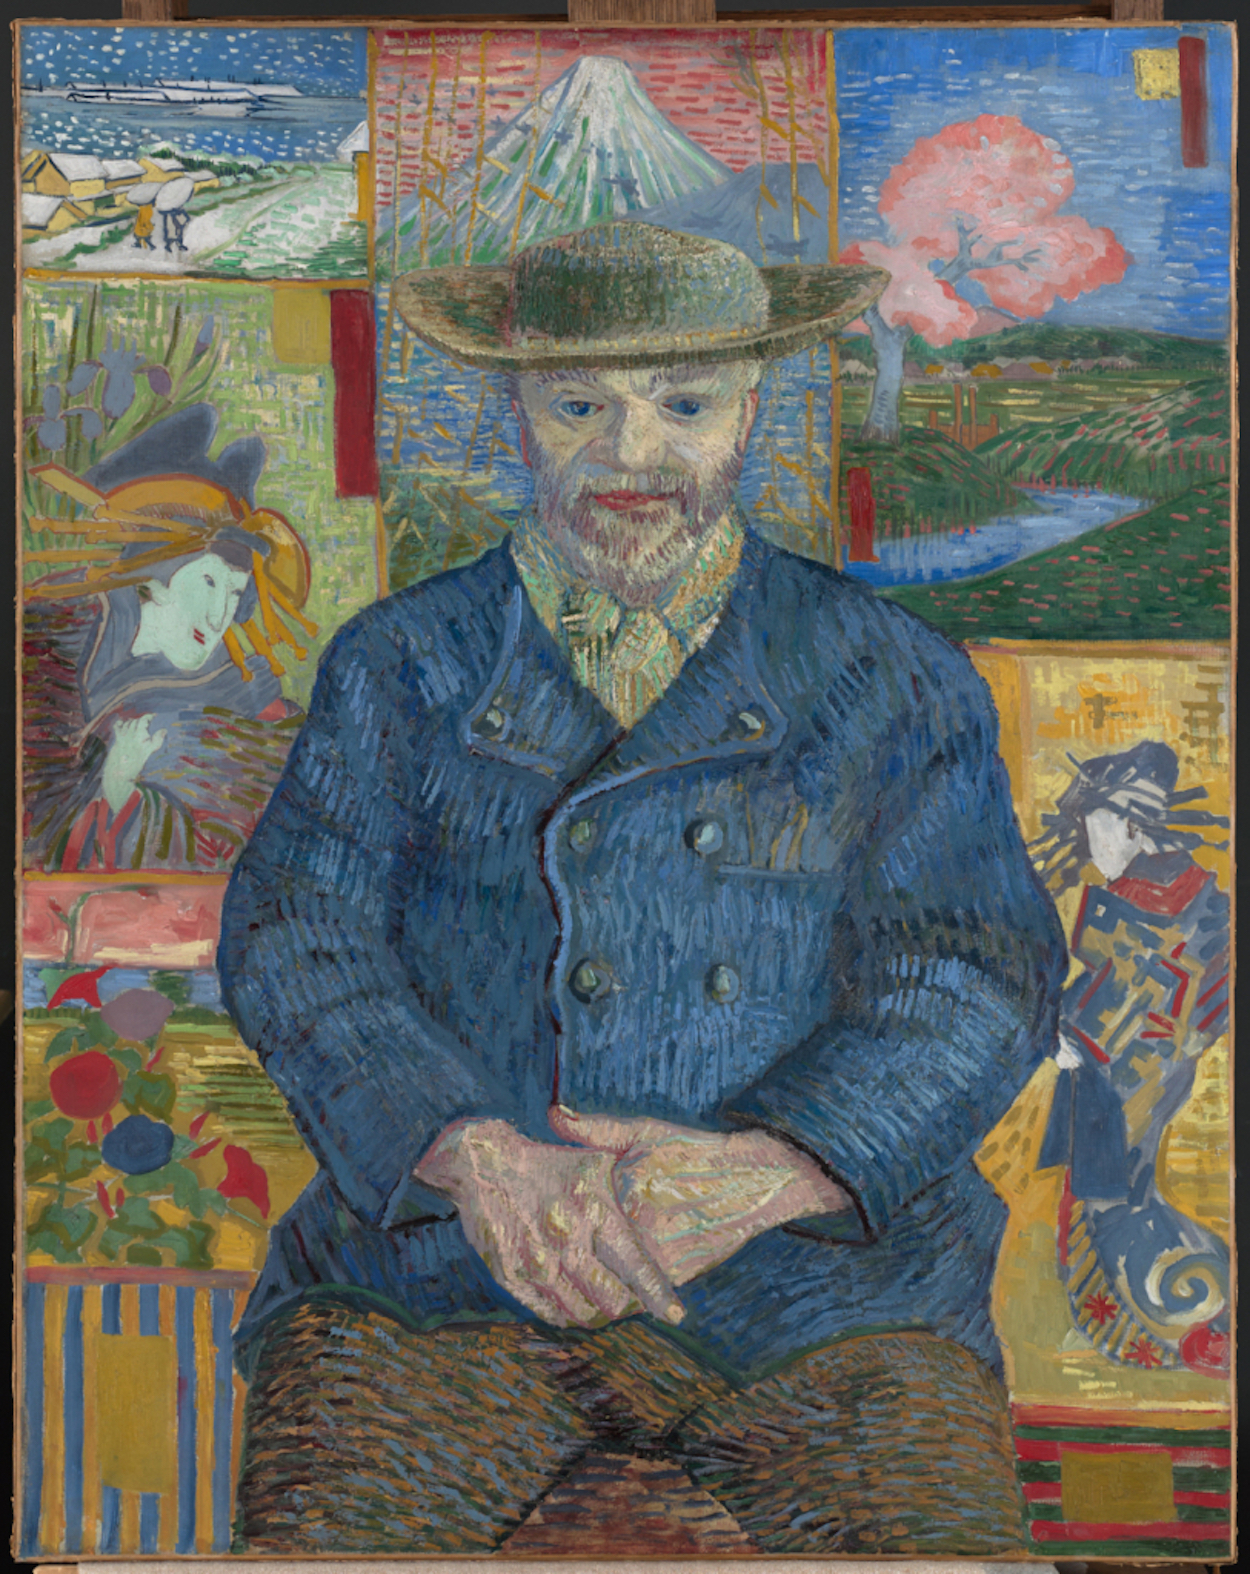 탕기 영감의 초상(Portrait of Père Tanguy) by 빈센트 반 고흐 - 1887 - 116.3 cm x 98 cm 